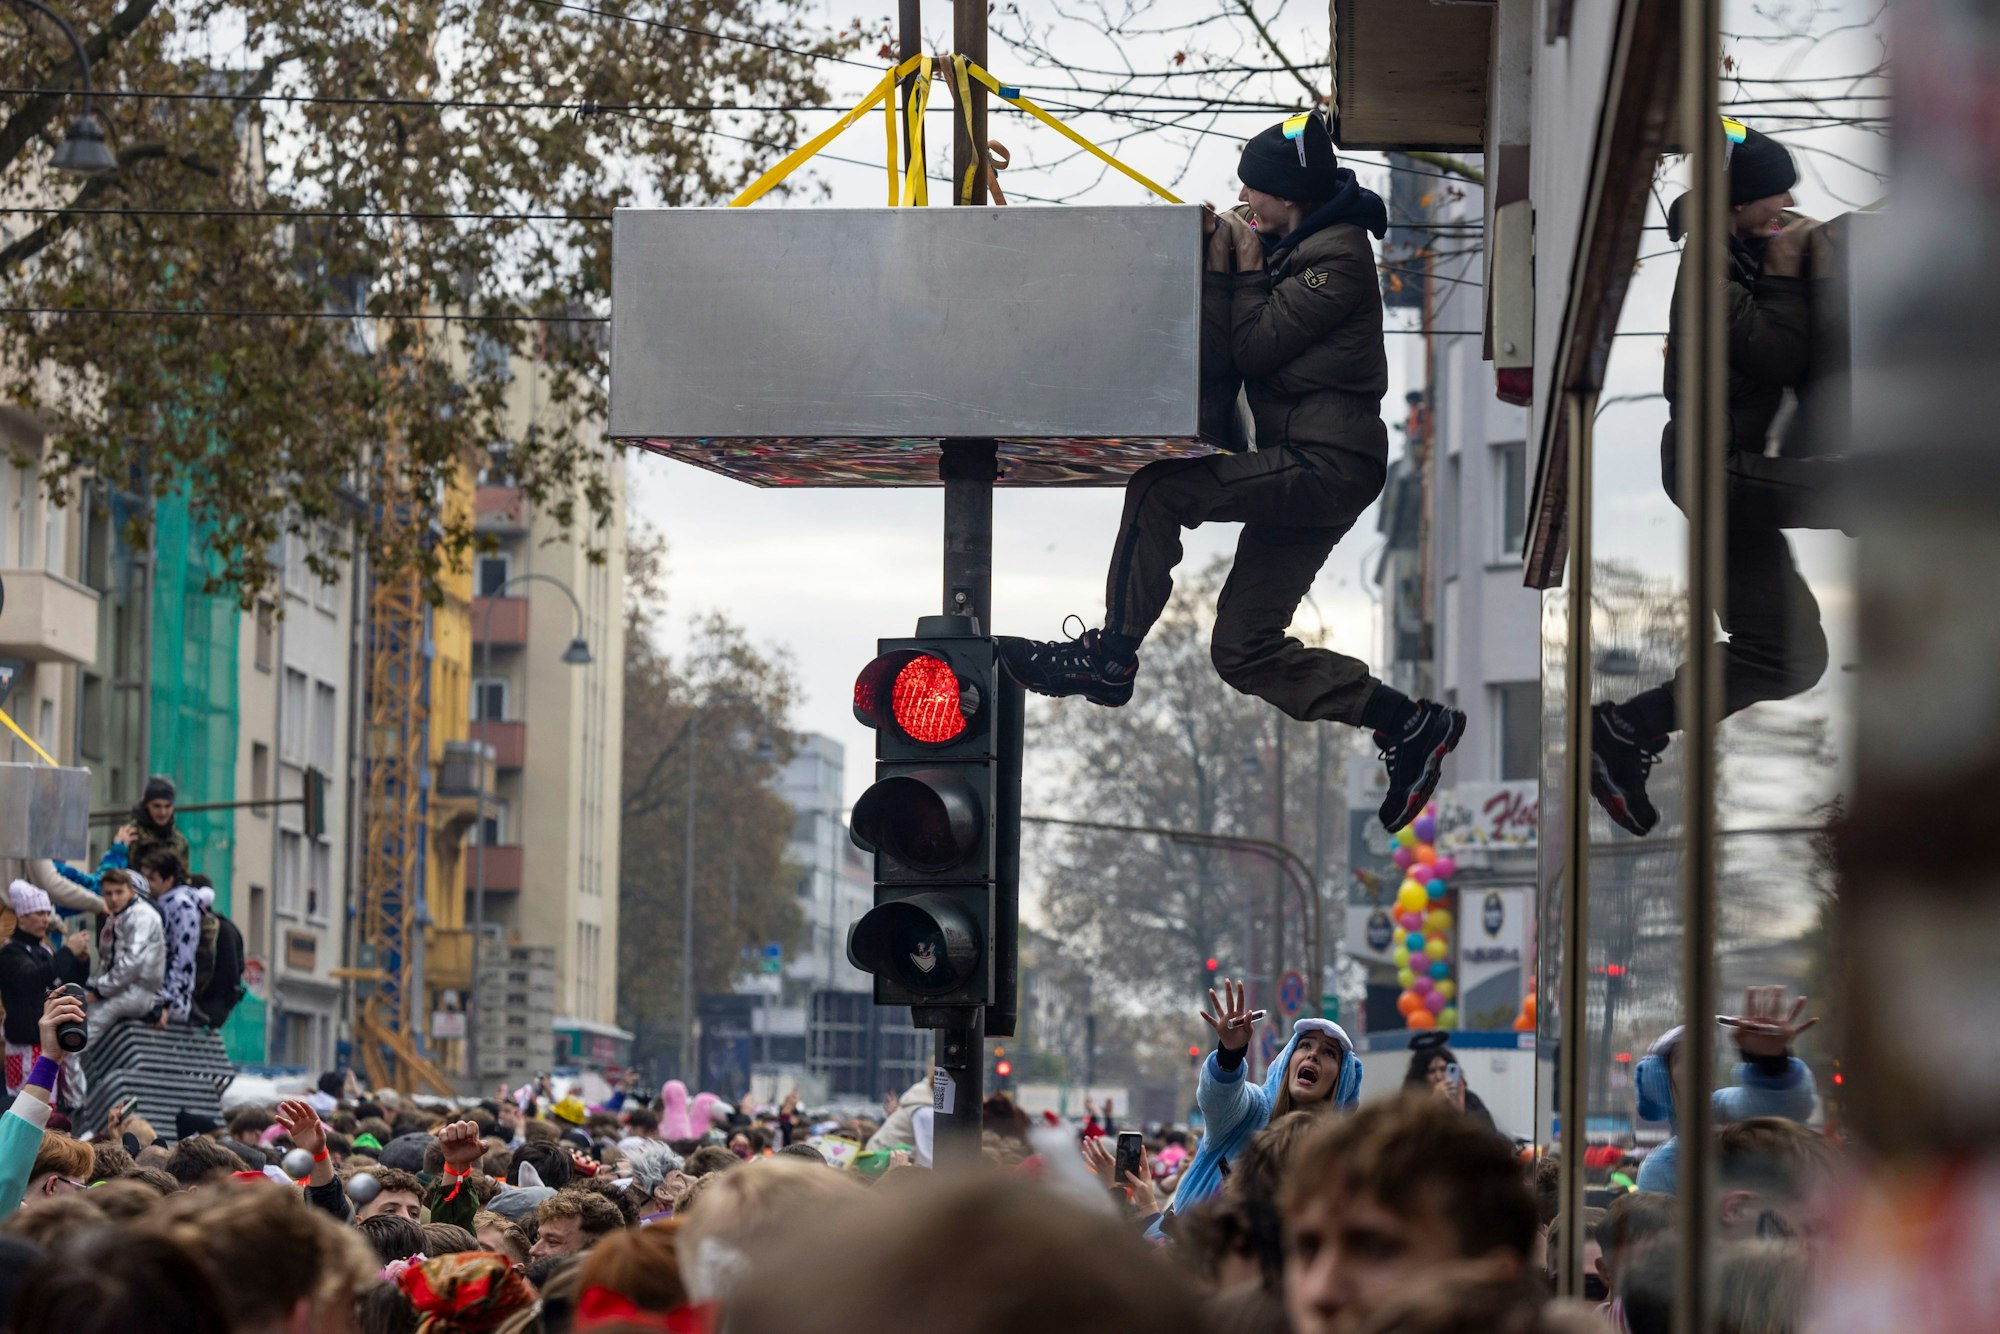 Ein Mann klettert auf einer Straßenampel, die angebrachte Klettersperre hindert ihn nicht.